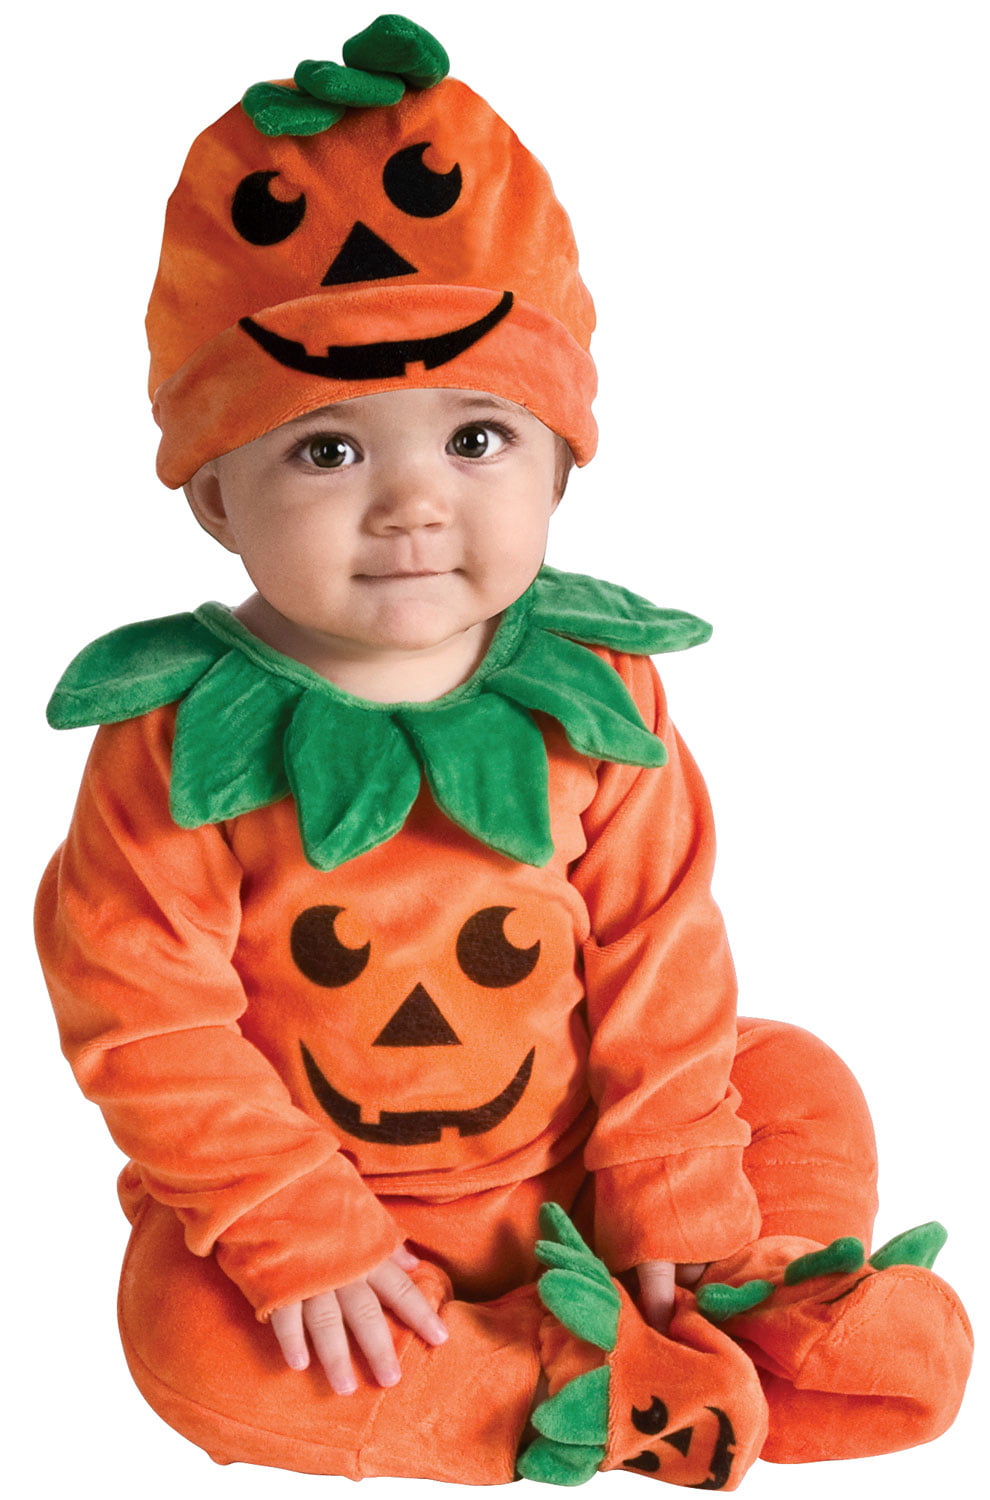 Dress Up America Baby Pumpkin